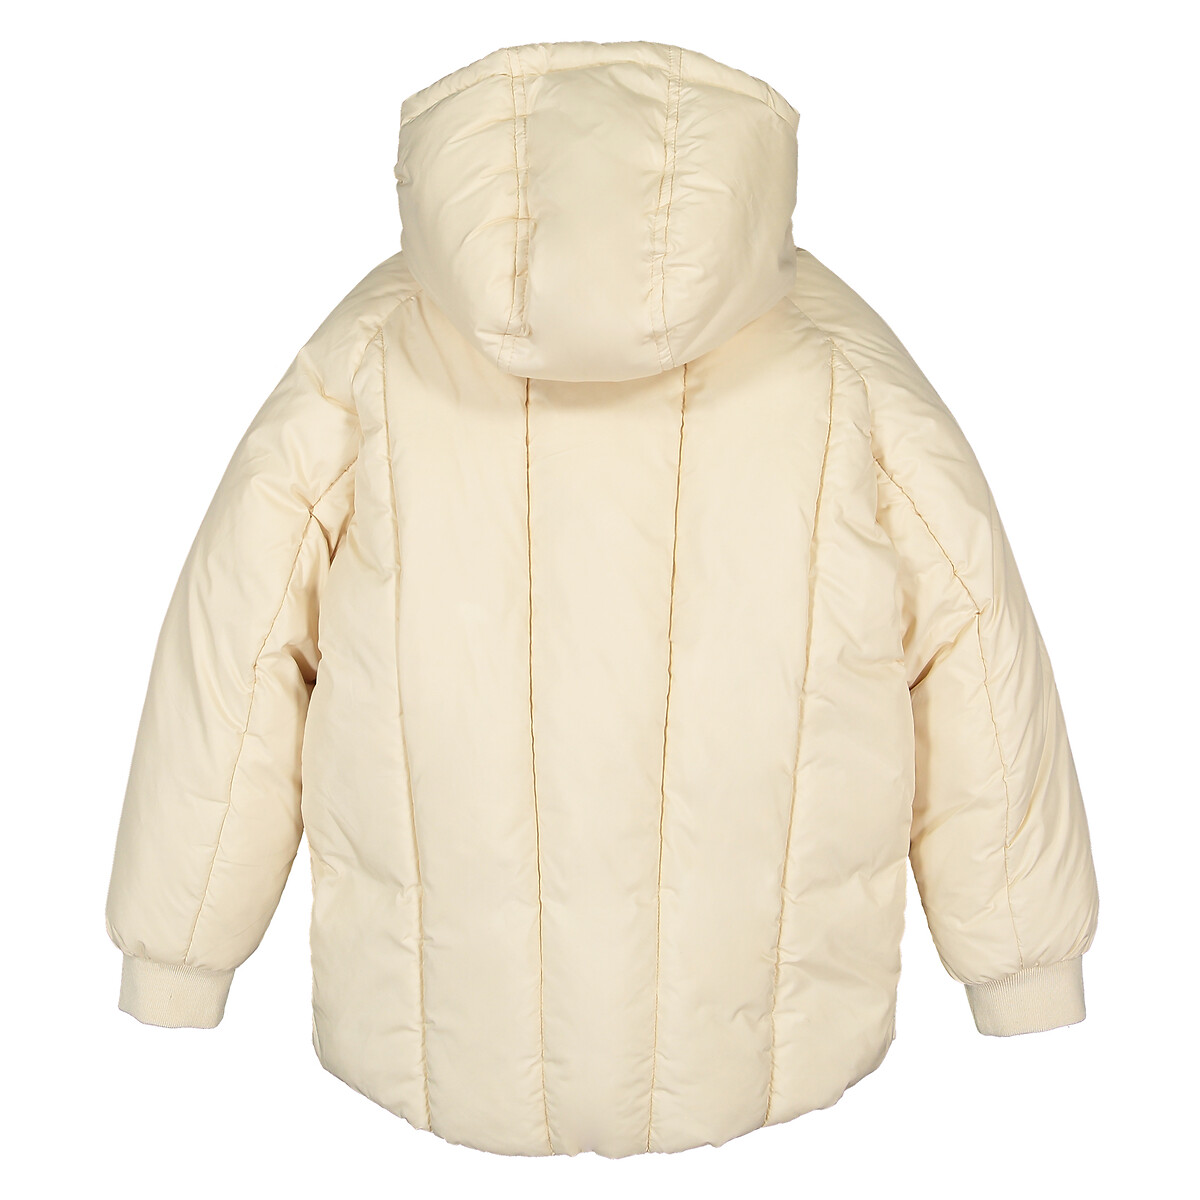 Куртка LaRedoute Стеганая с капюшоном теплая и пышная 3-14 лет 5 лет - 108 см бежевый, размер 5 лет - 108 см - фото 5